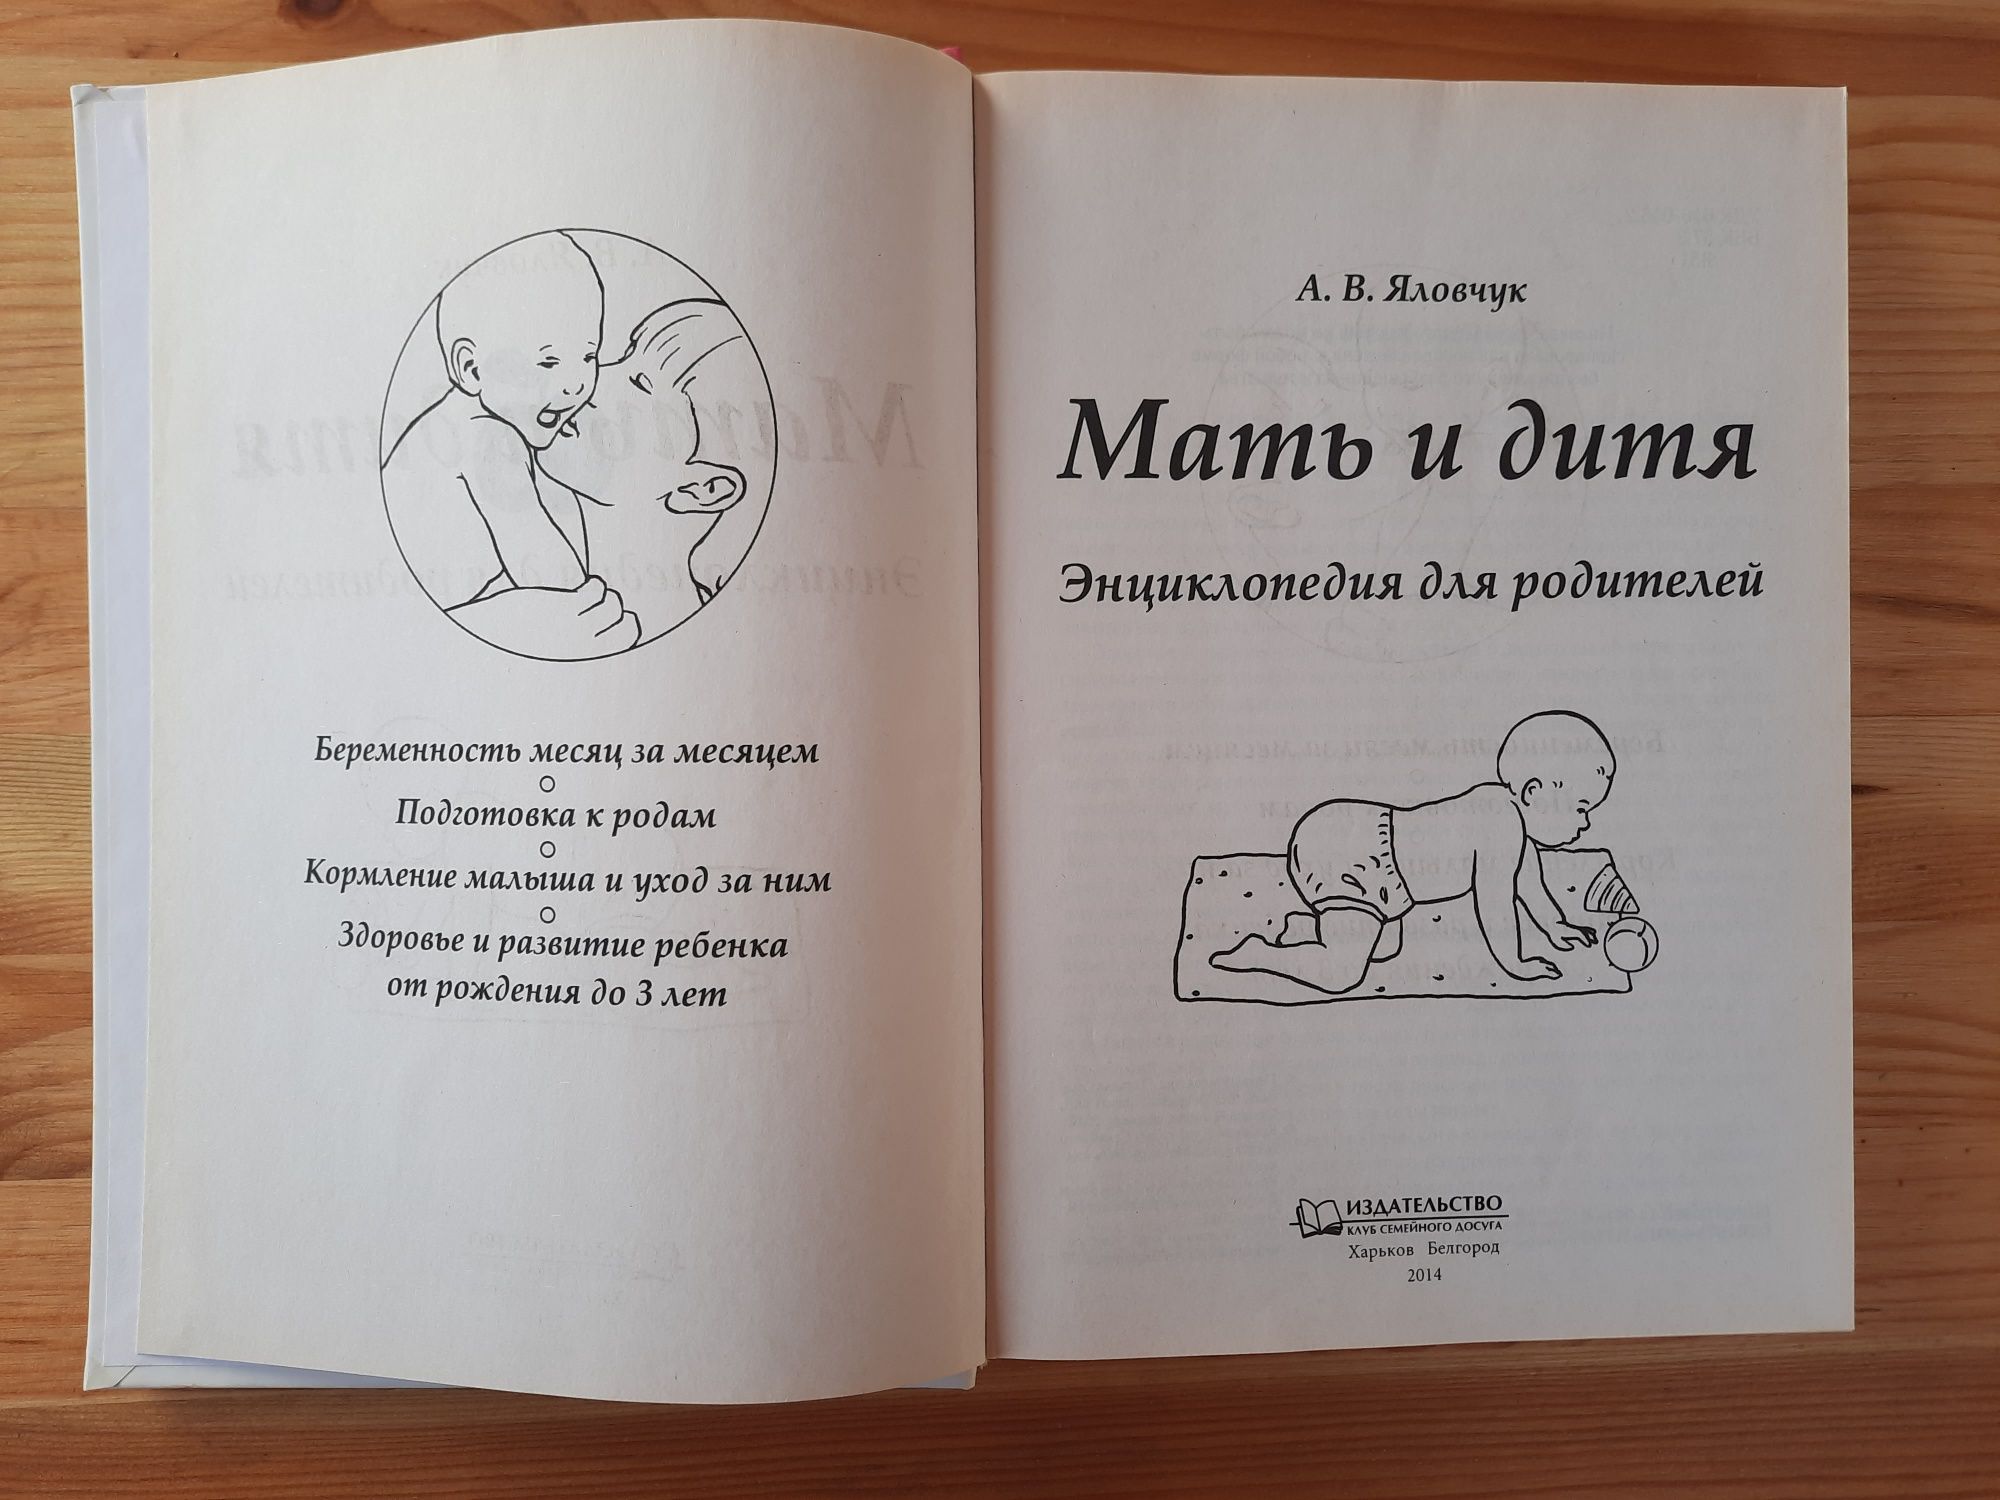 Книга Мать и дитя